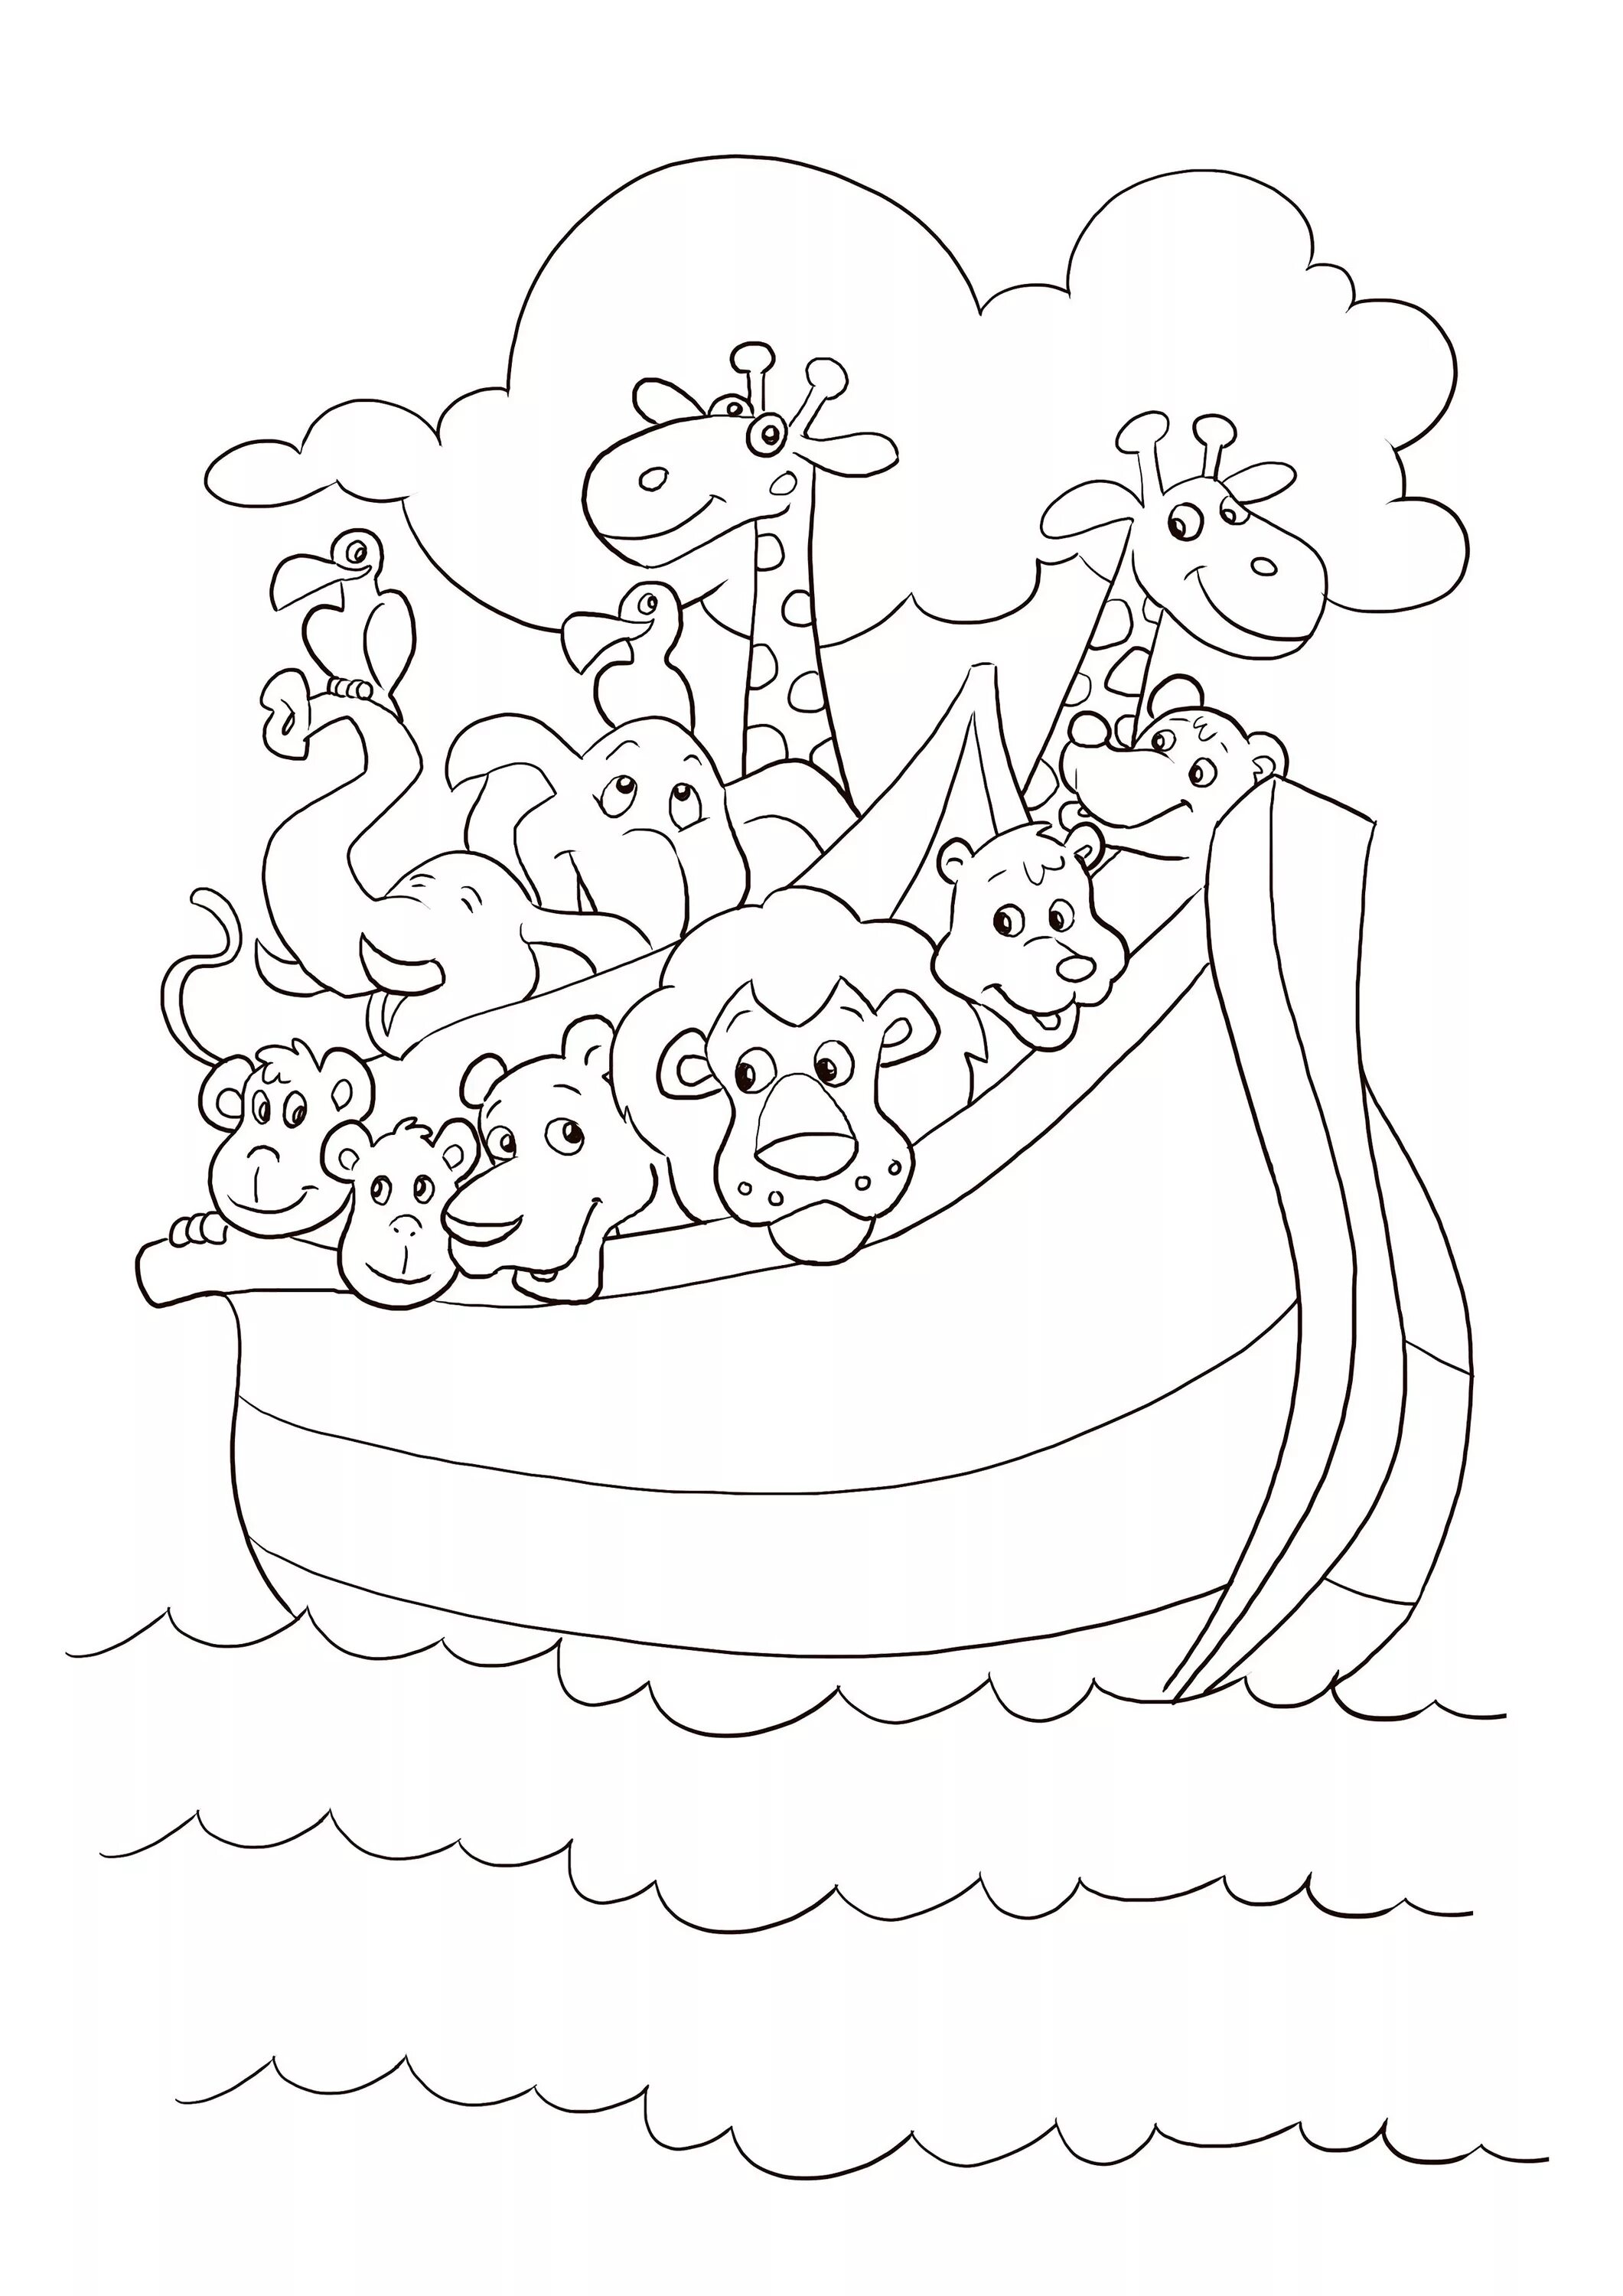 Noah's Ark for kids #18